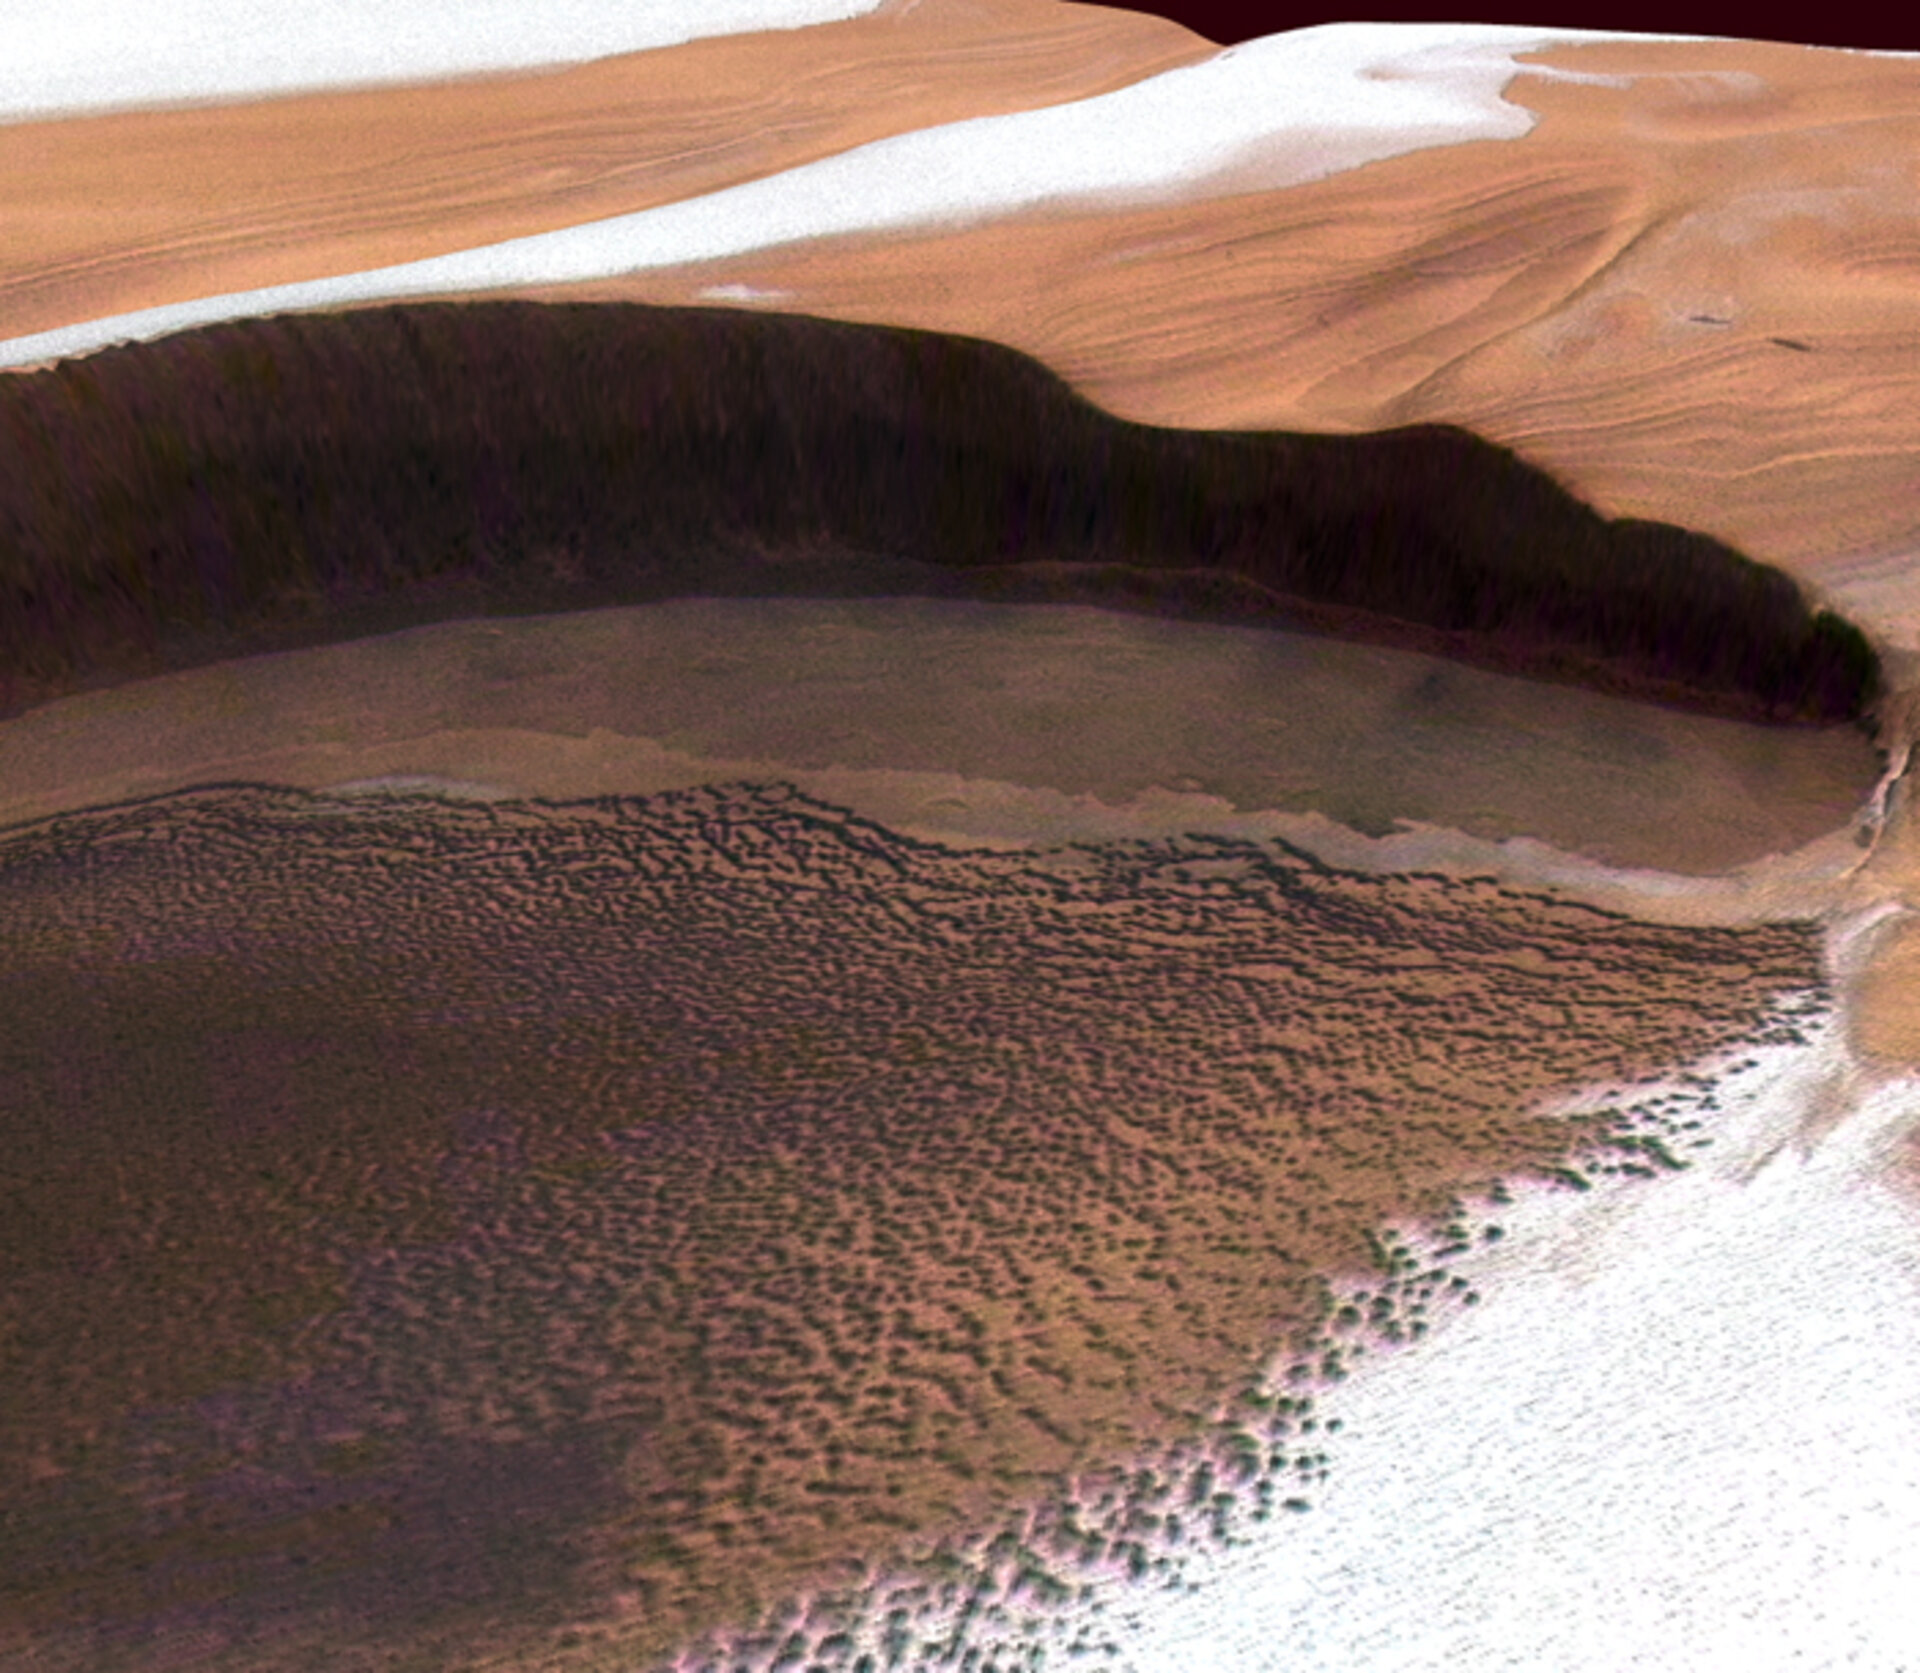 Ijs en stof op de noordpool van Mars, gefotografeerd door ESA's Marssonde Mars Express